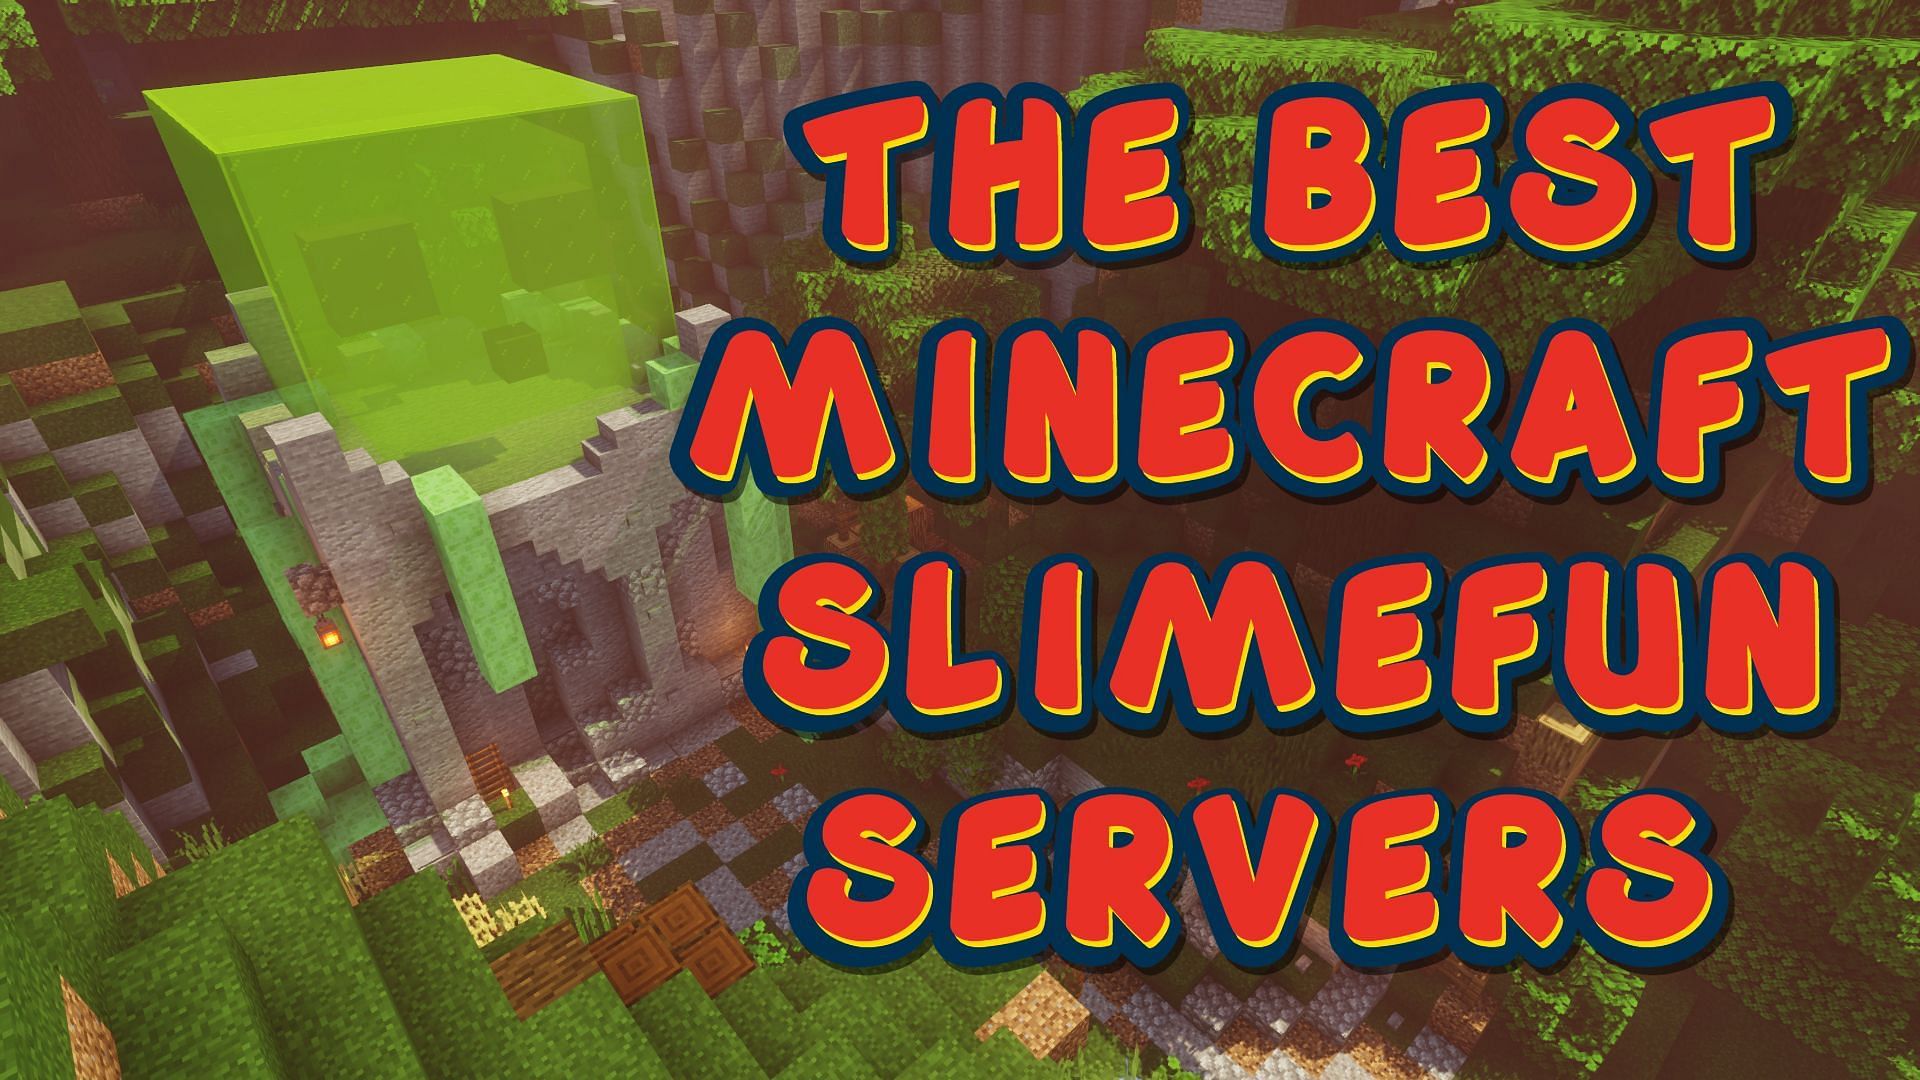 Minecraft Slimefun servers offer tons of entertainment (Image via Sportskeeda)